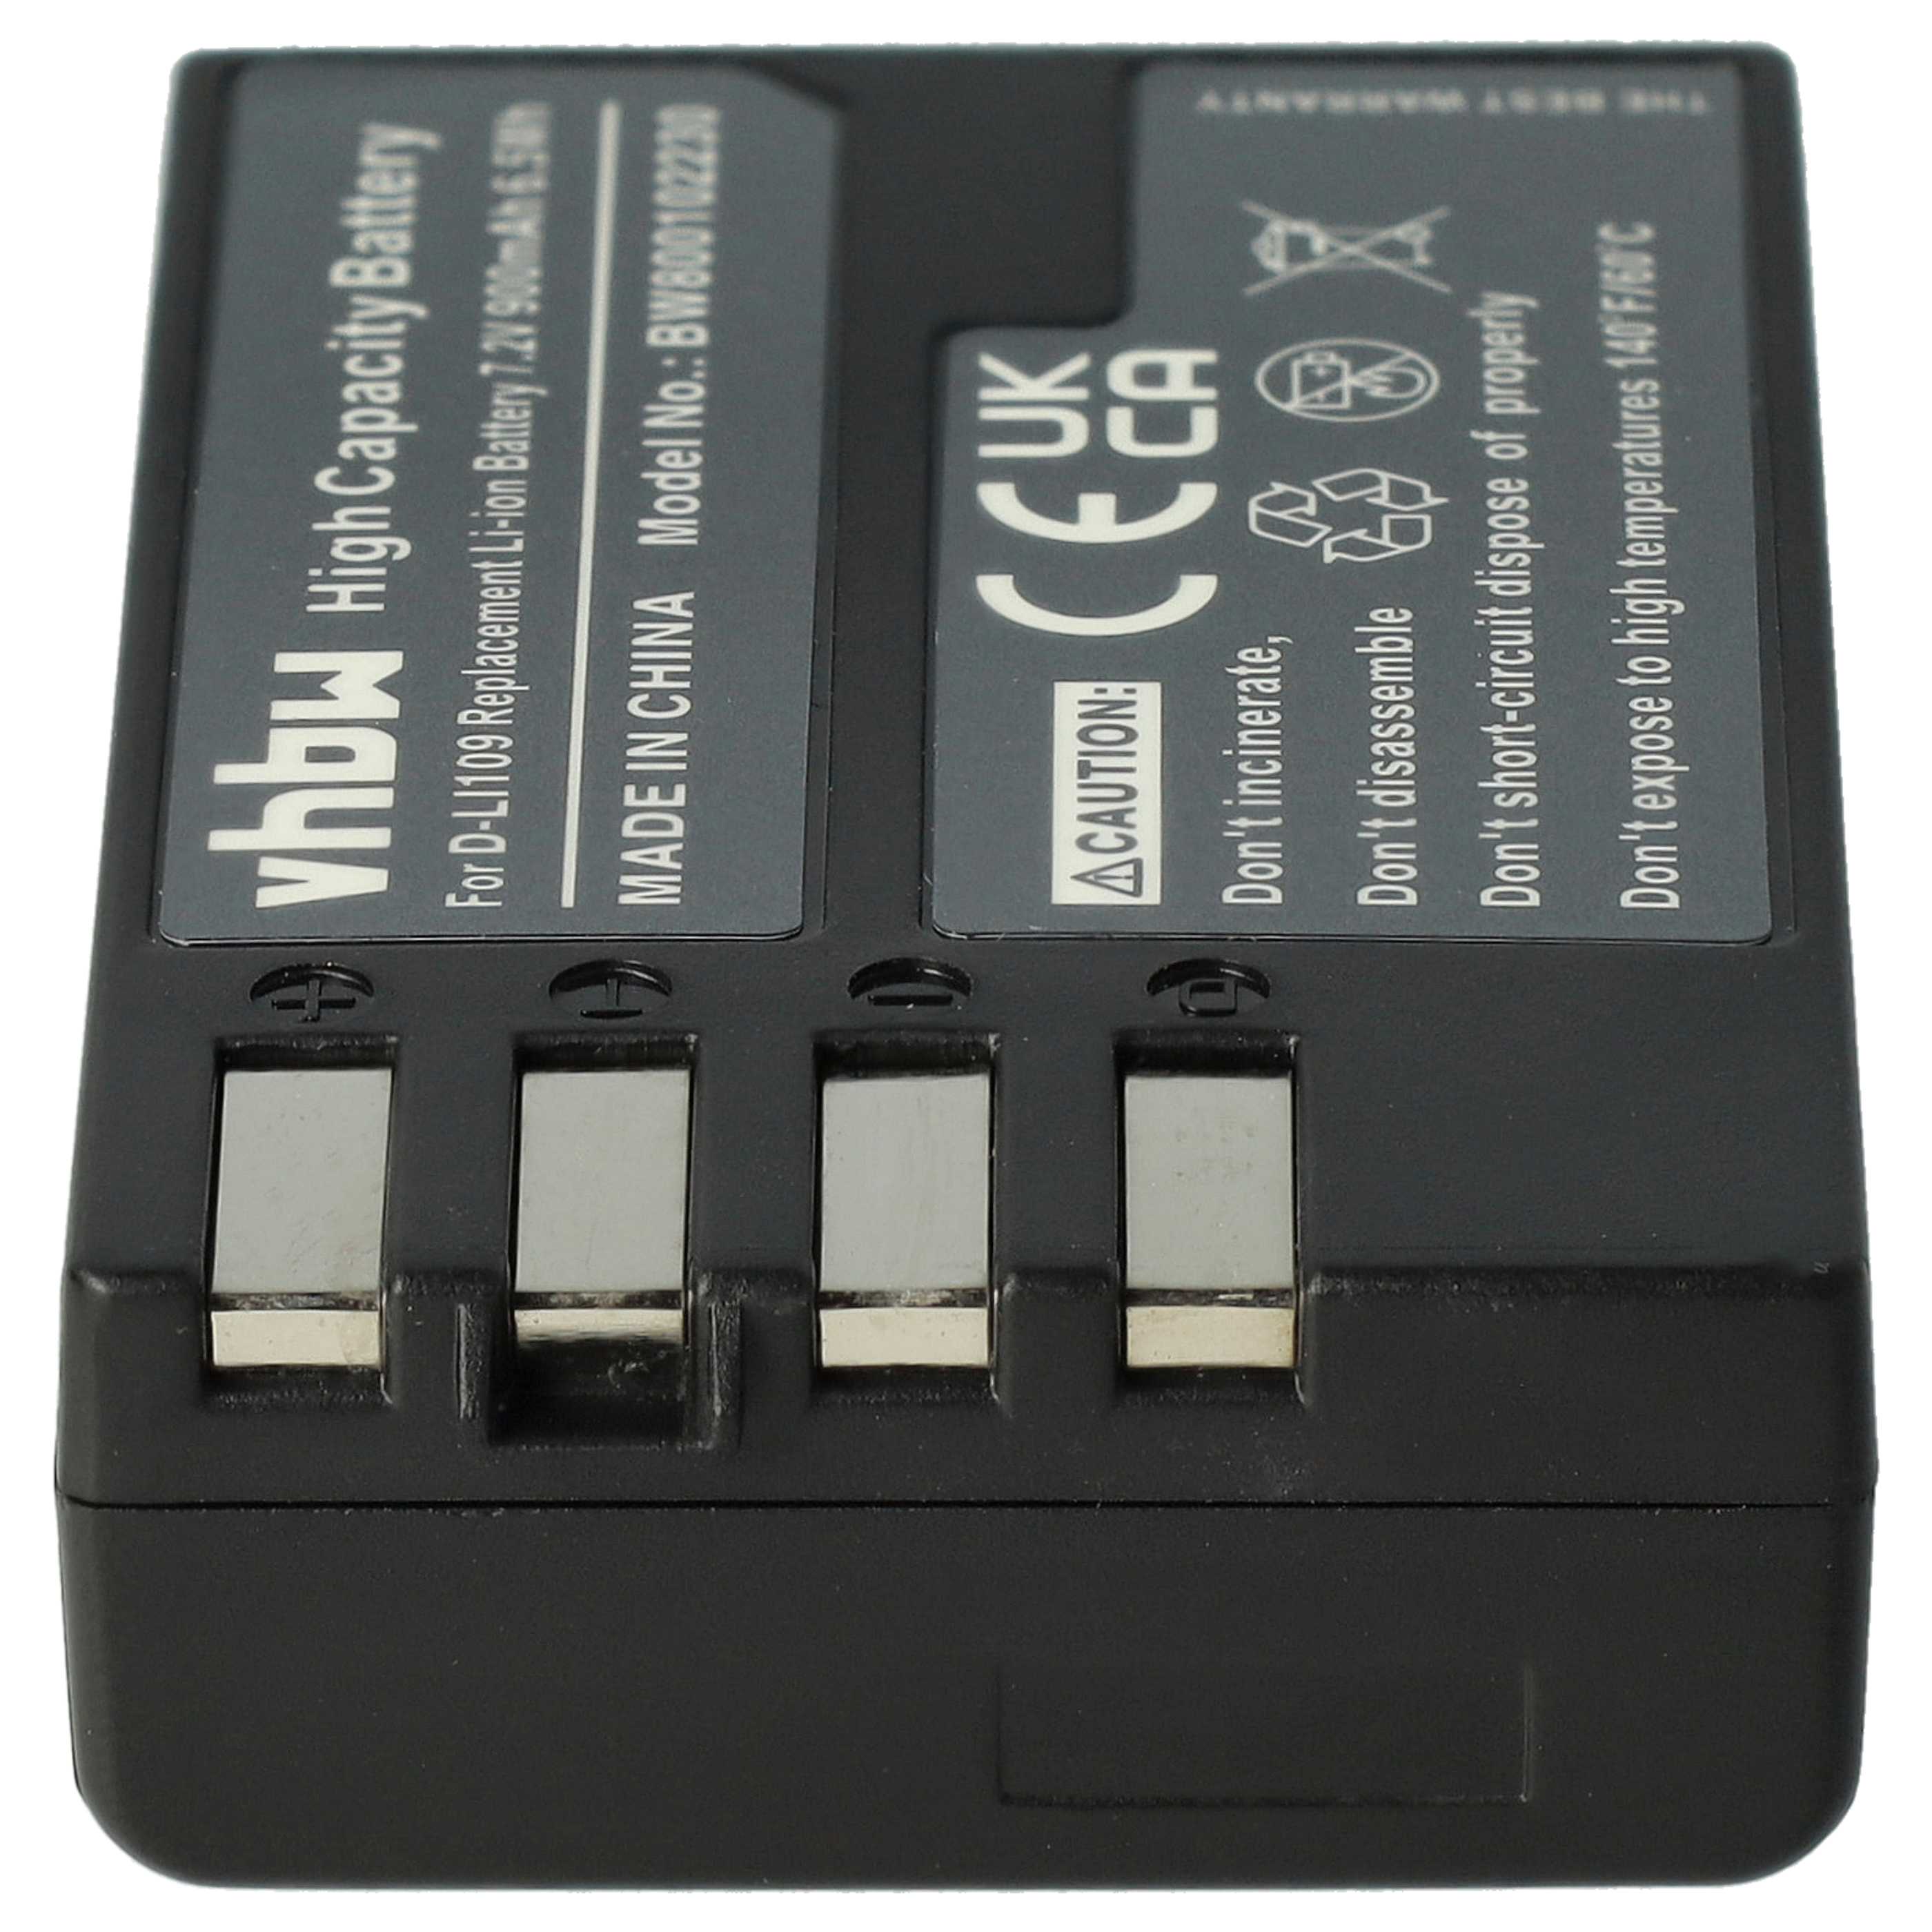 Batterie remplace Pentax D-Li109 pour appareil photo - 900mAh 7,2V Li-ion